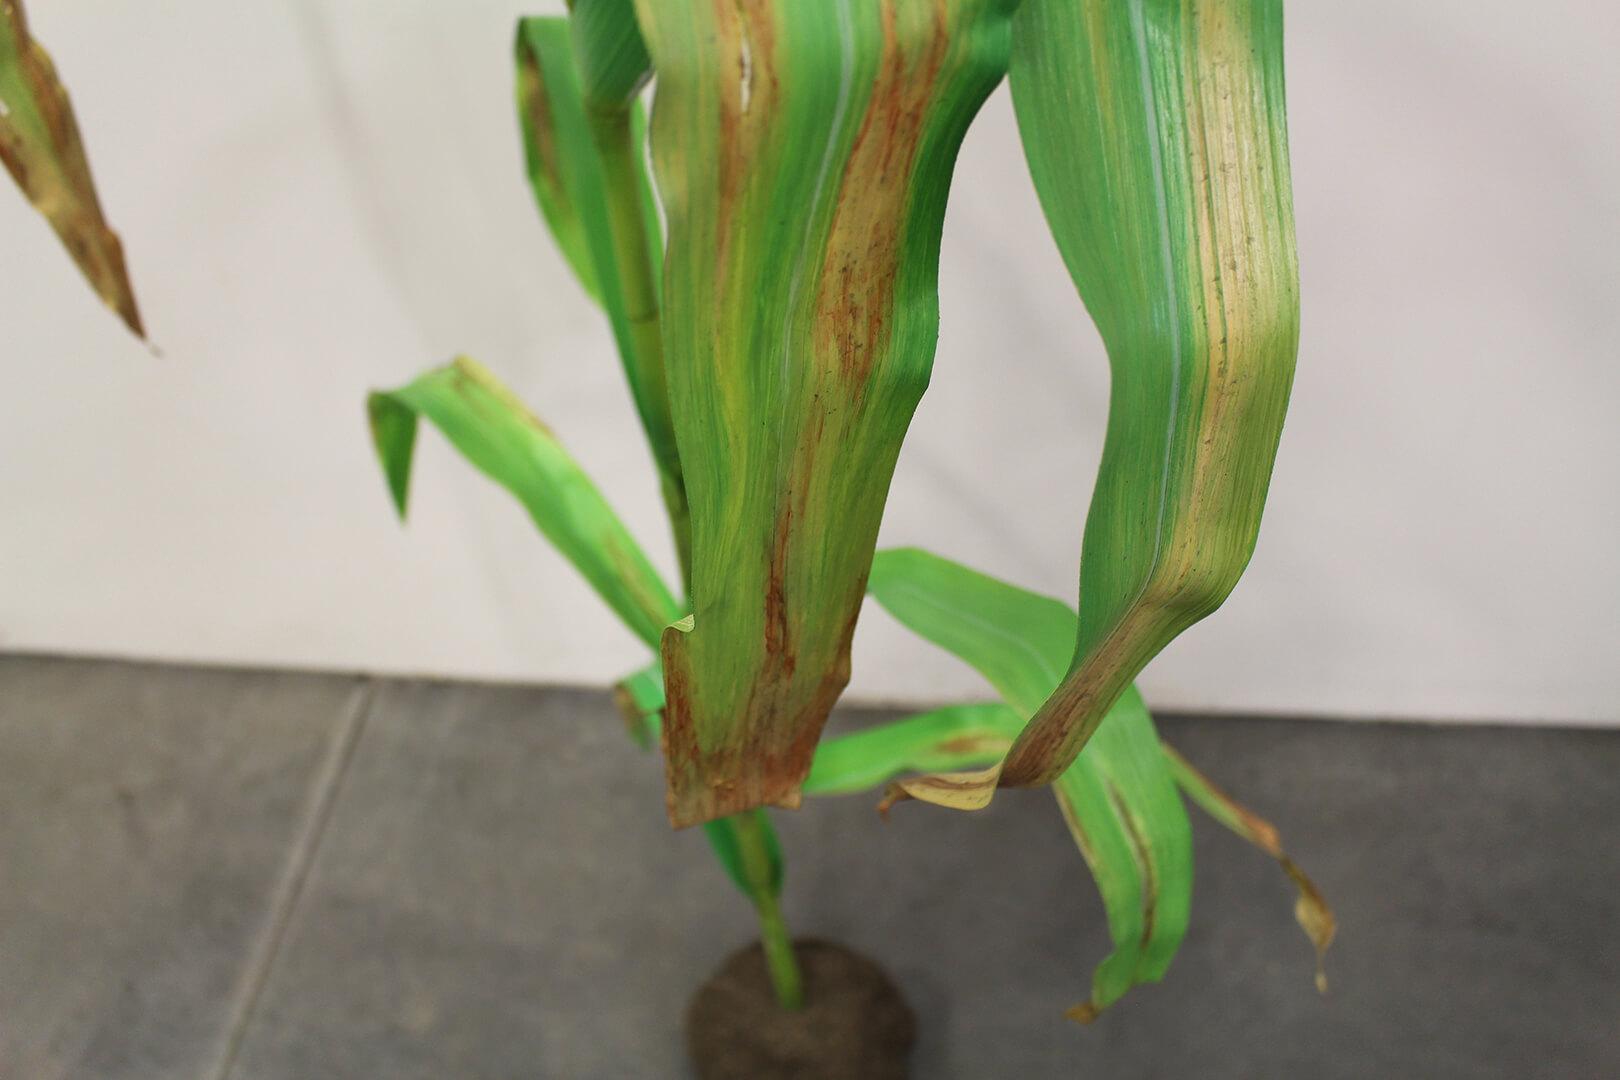 Lifelike replica of corn plant showing effects of Goss’ wilt disease